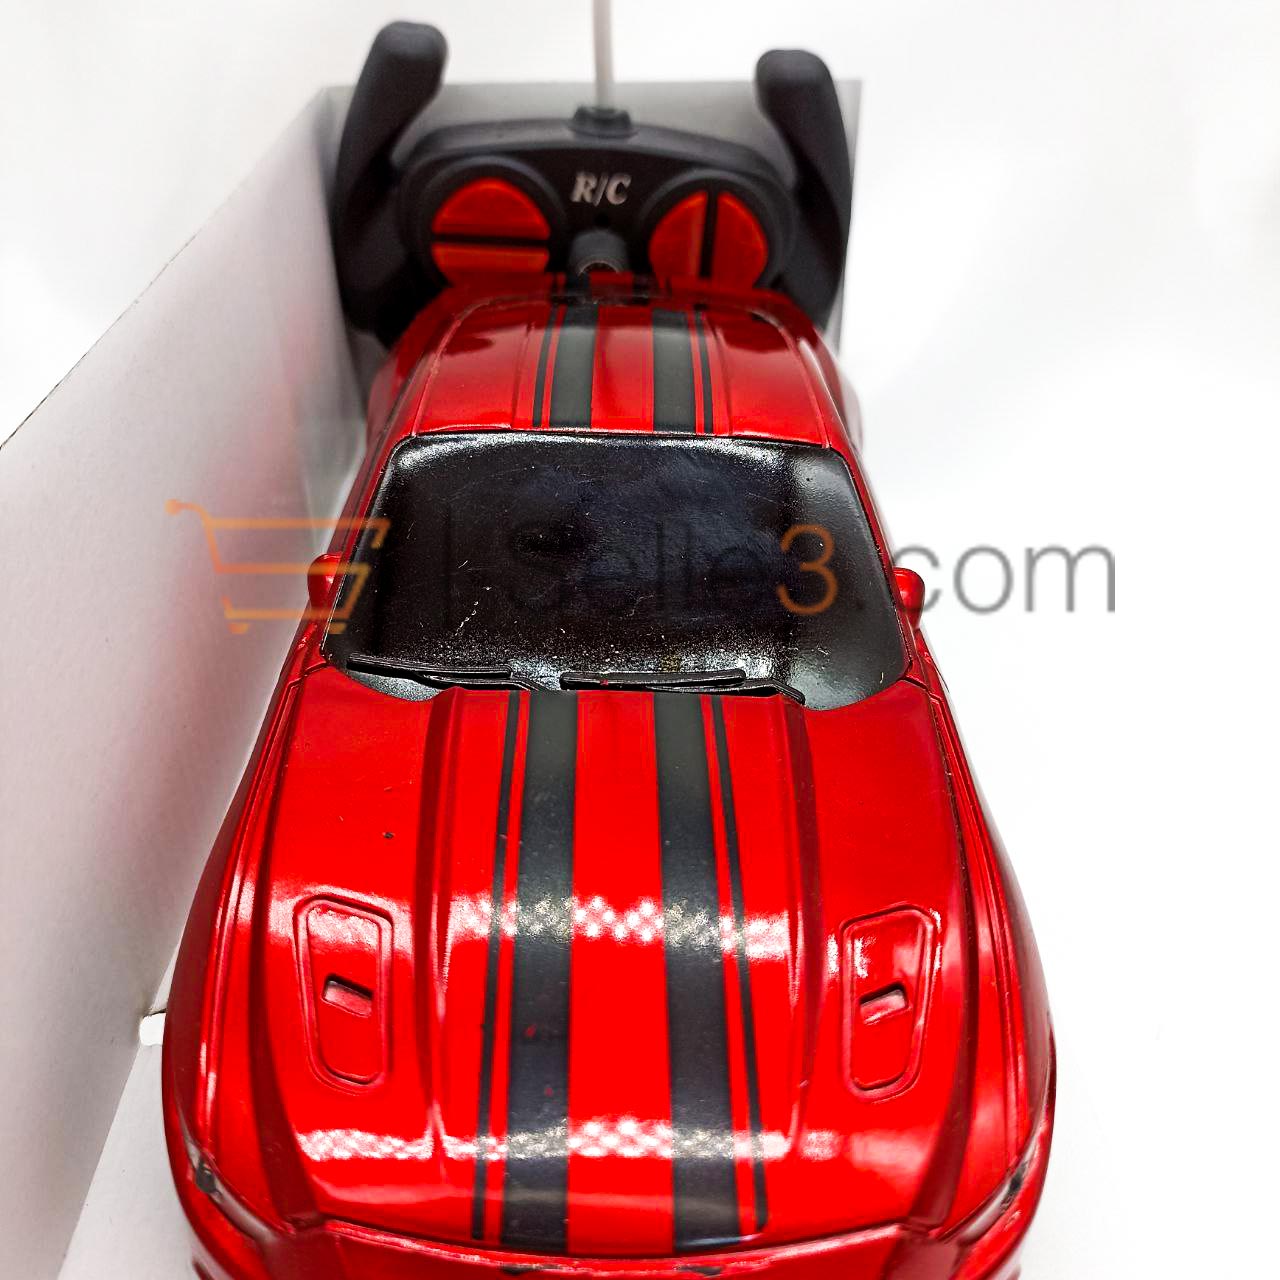 سيارة مستانج لاسلكية Mustang Sansfil Miniature Model Wireless Car Toy